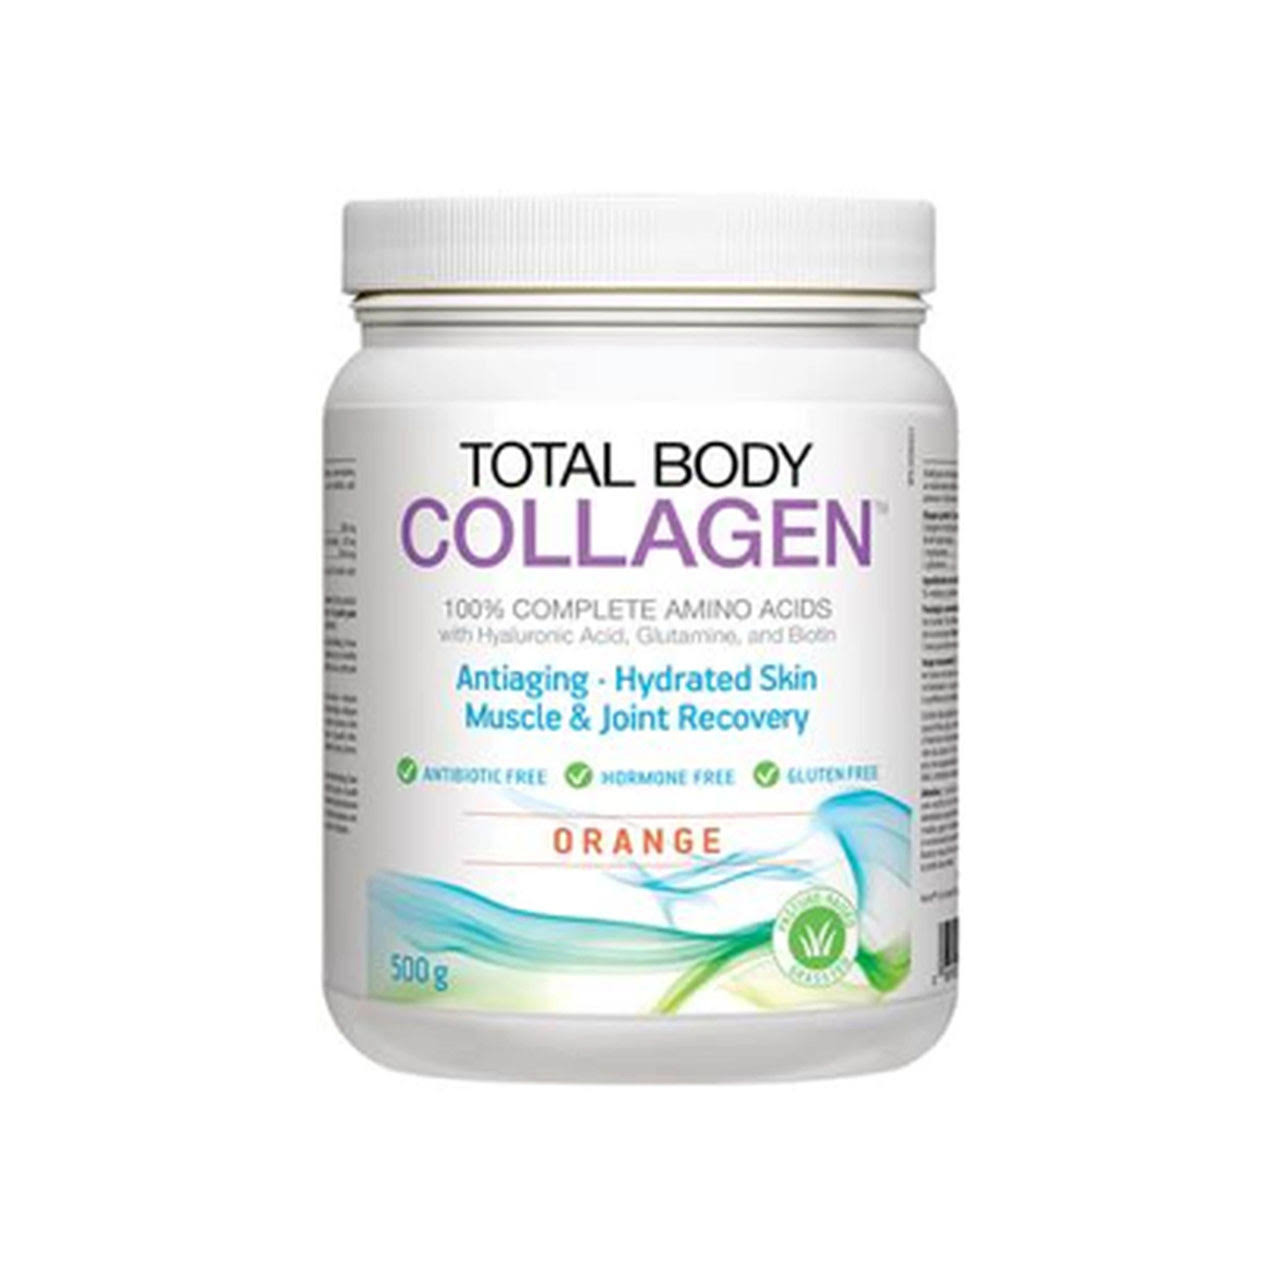 Total Body Collagen - Orange (500 g)